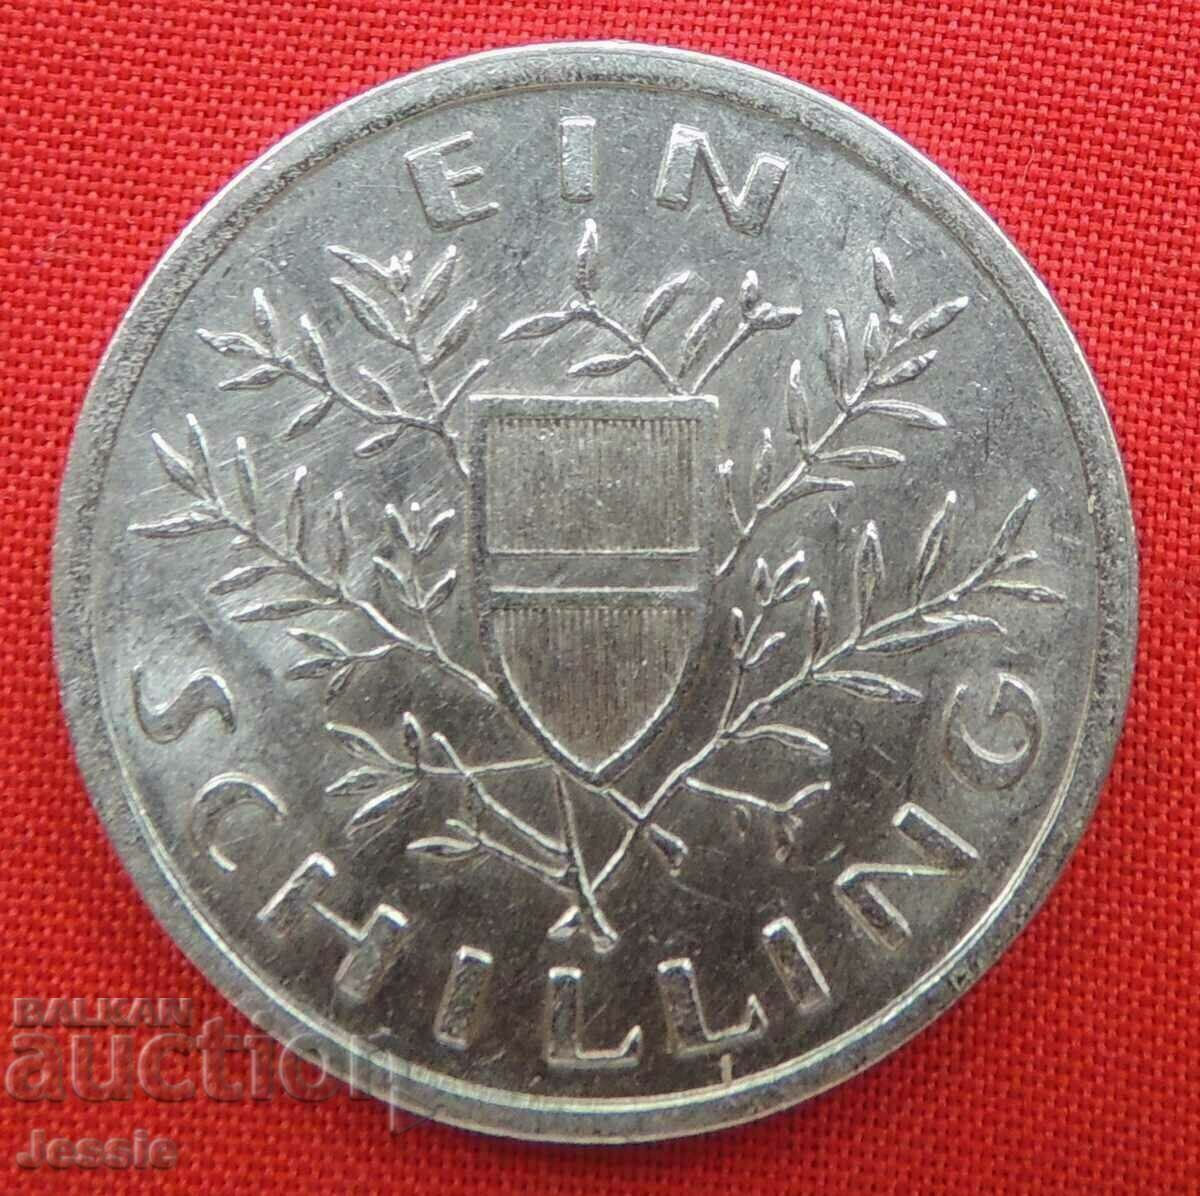 1 Shilling 1926 Austria Silver